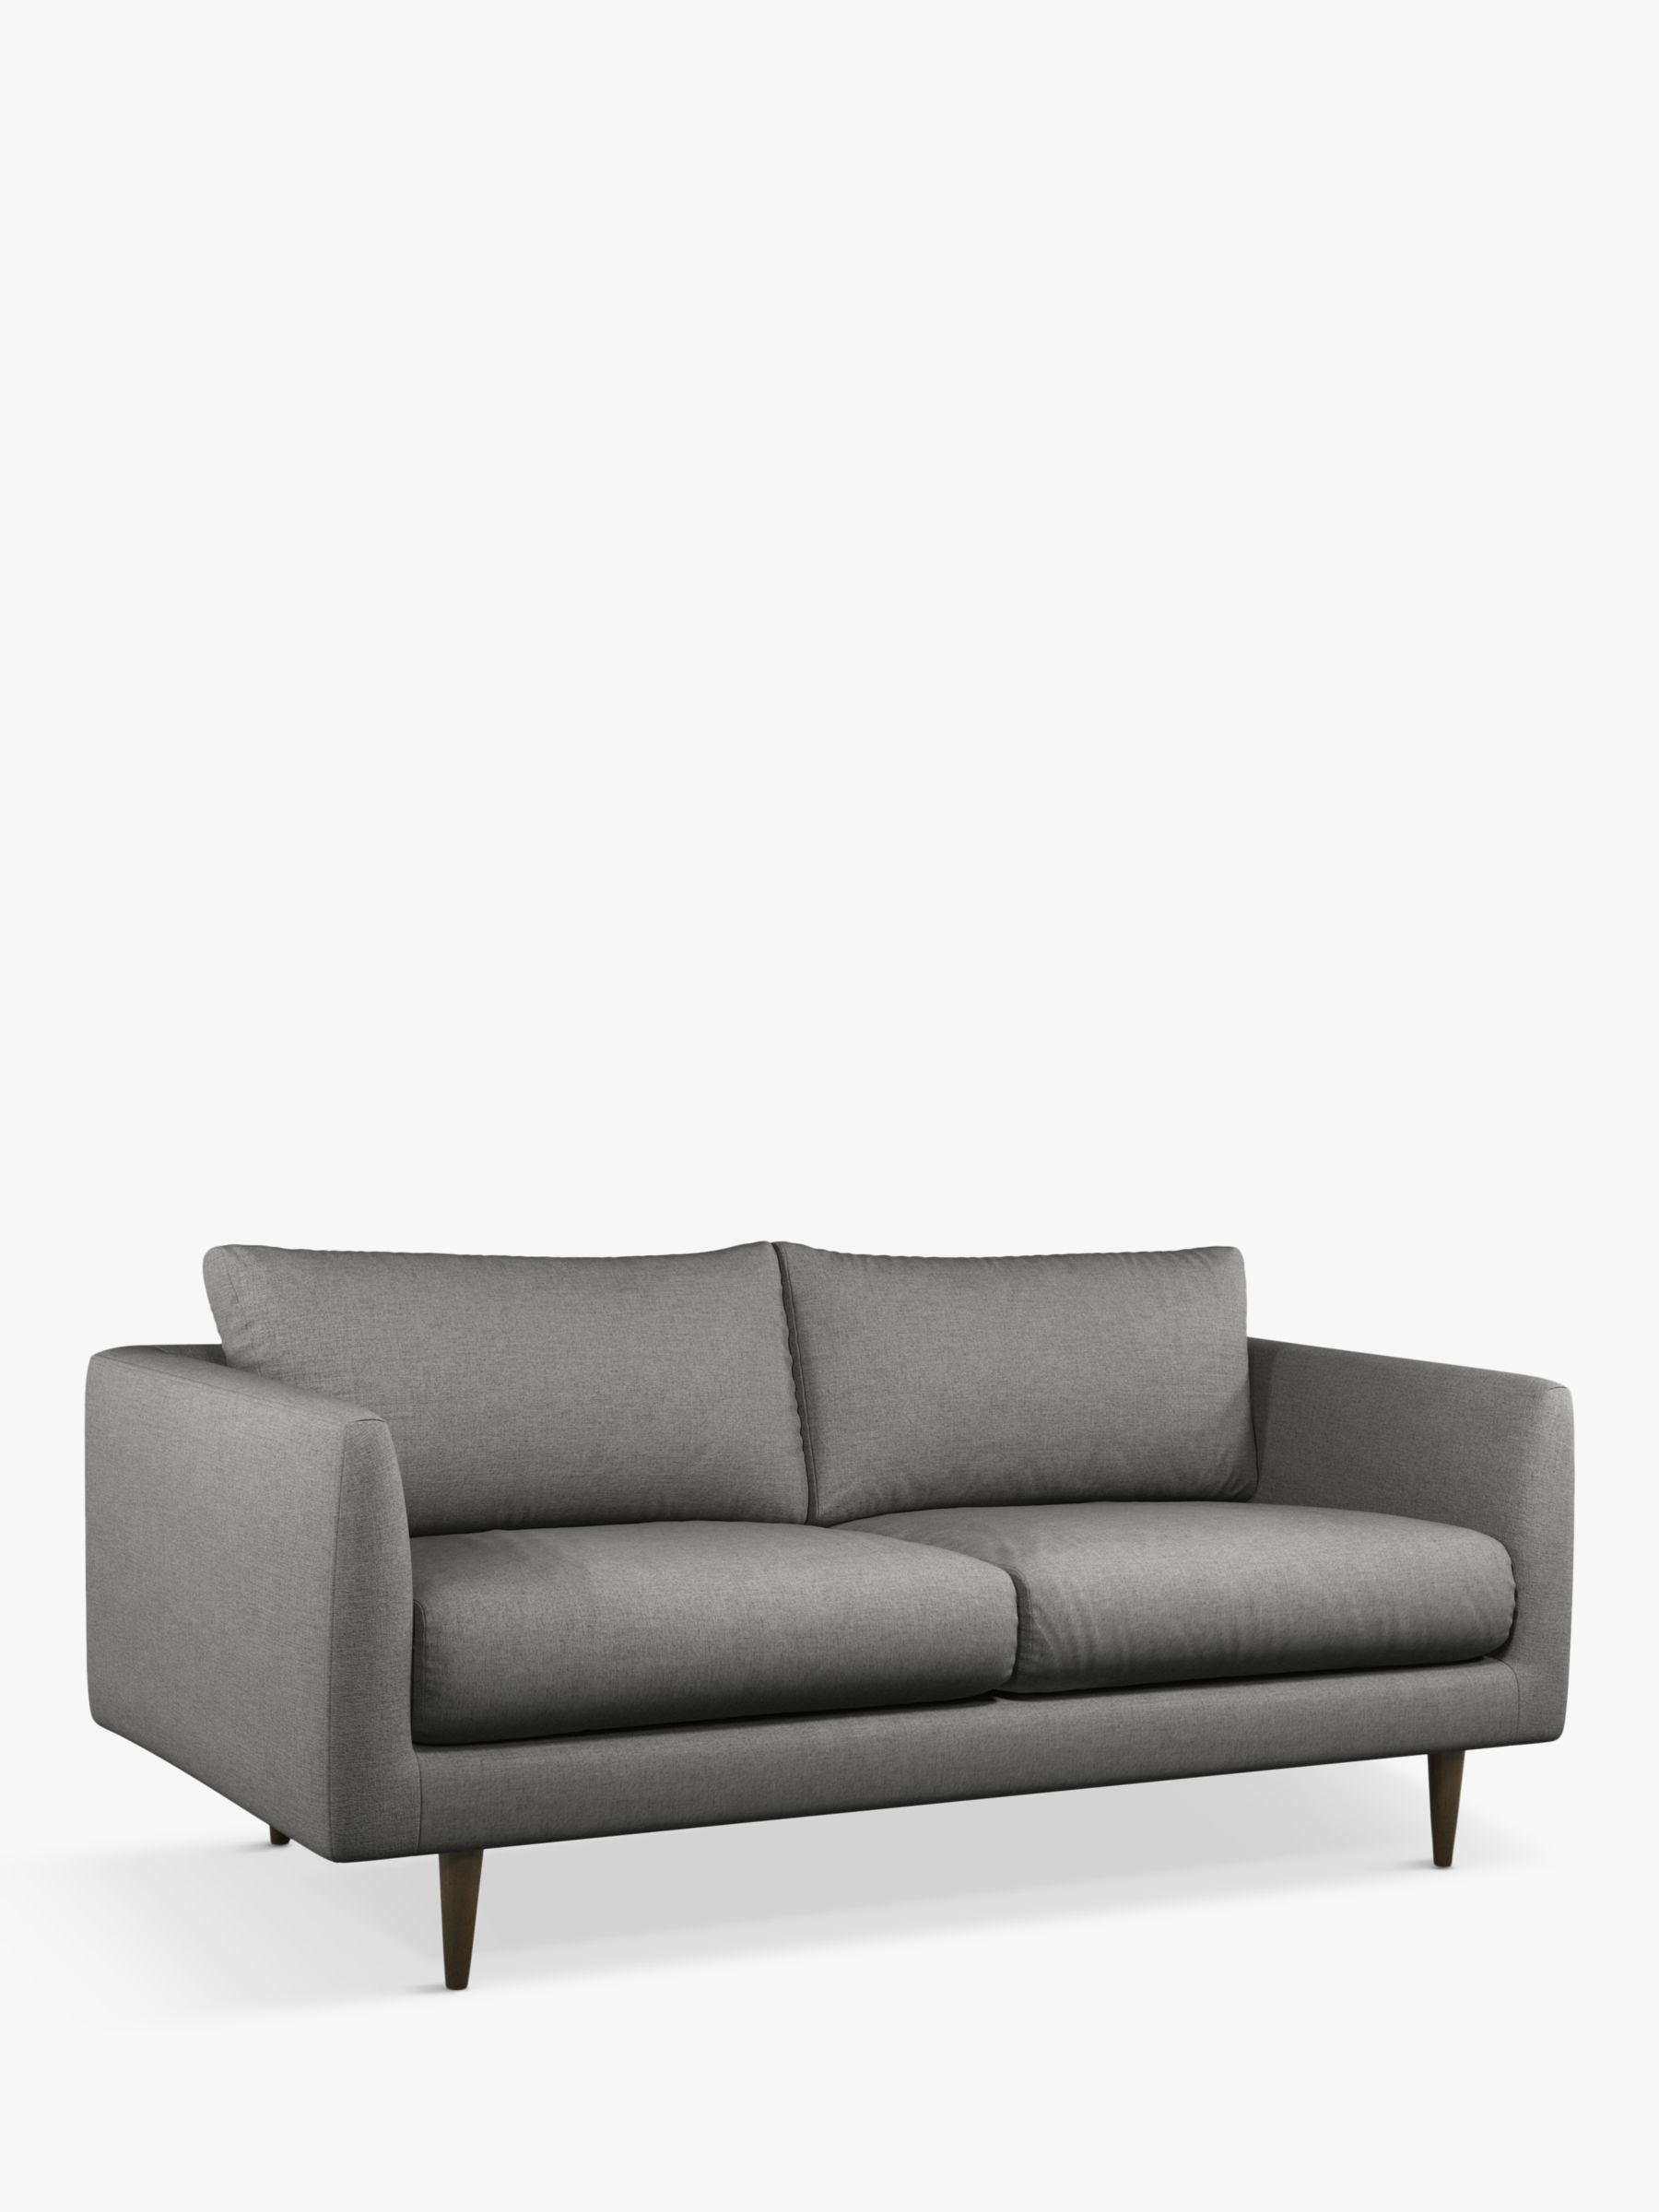 Latimer Range, Swoon + John Lewis Latimer Medium 2 Seater Sofa, Dark Leg, Nickel Weave